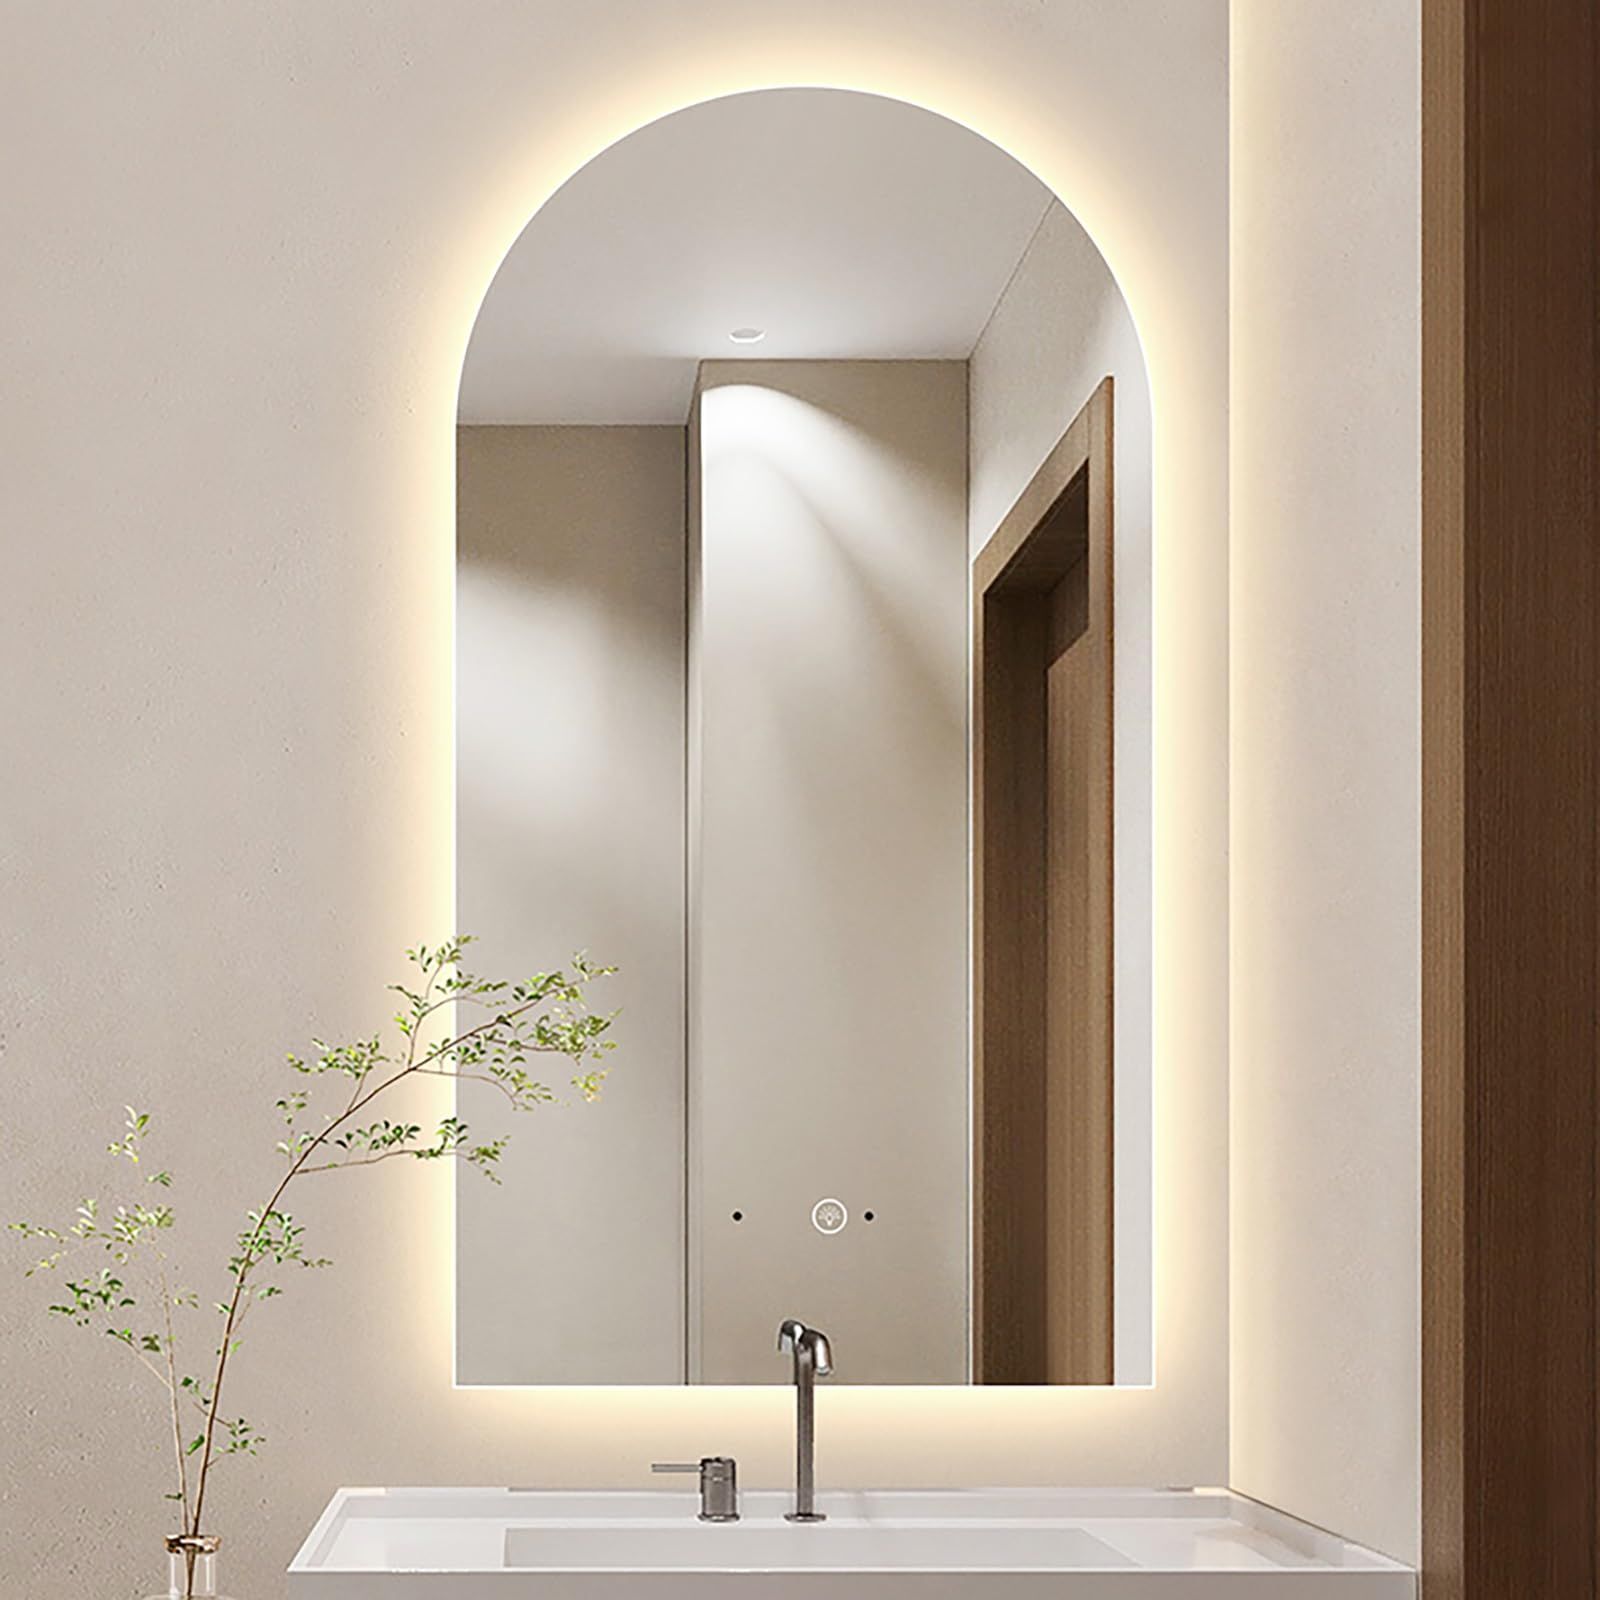 The Versatile Appeal of Bathroom Vanity Wall Mirrors